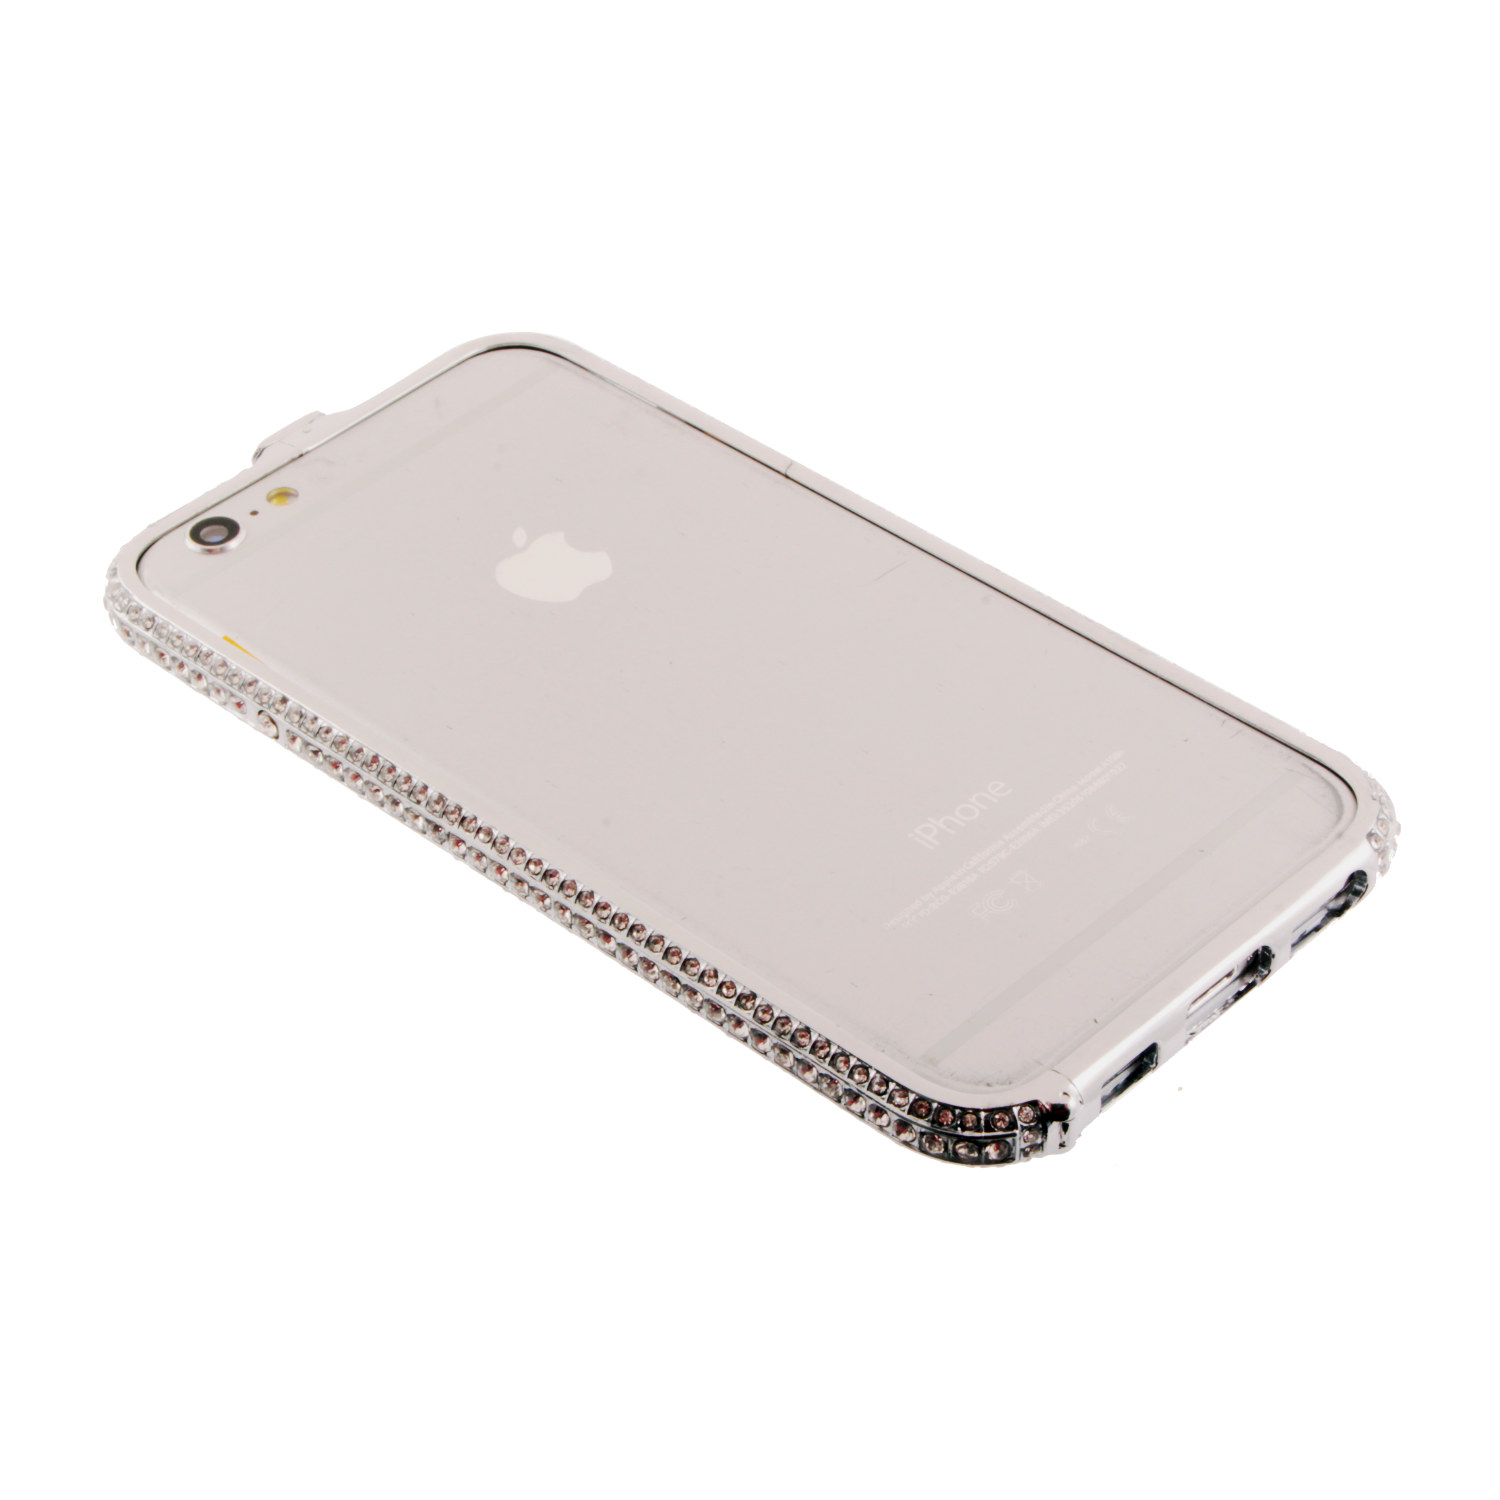 Бампер на iPhone 6/6S металлический стразы в 3 ряда серебро метал